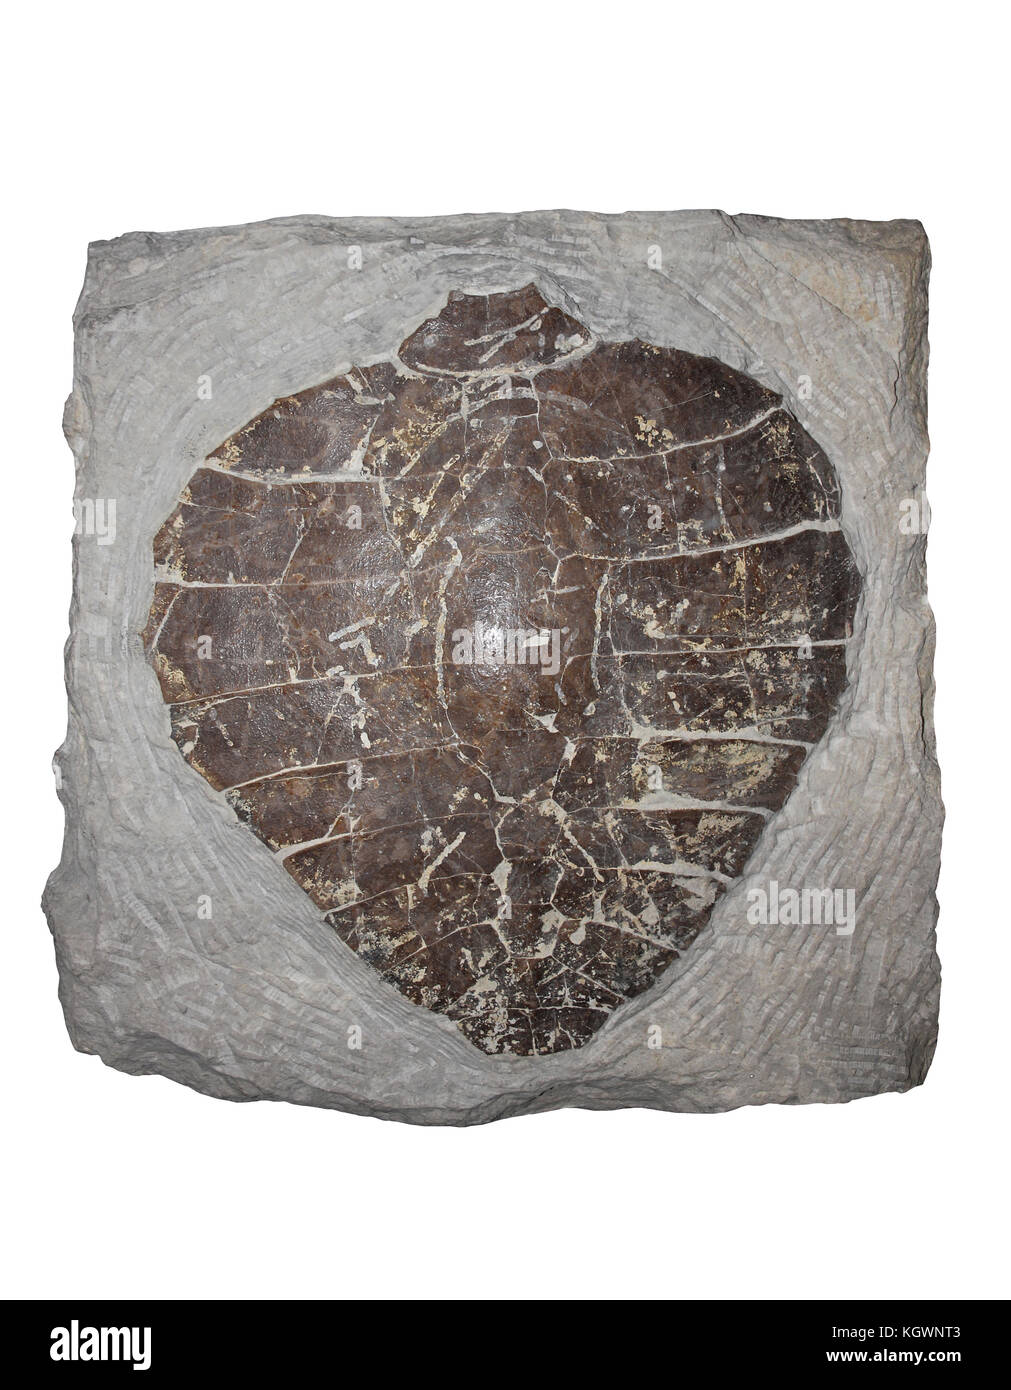 Los fósiles de caparazón de tortuga Pleurosternon sp. Jurásico, Dorset Foto de stock